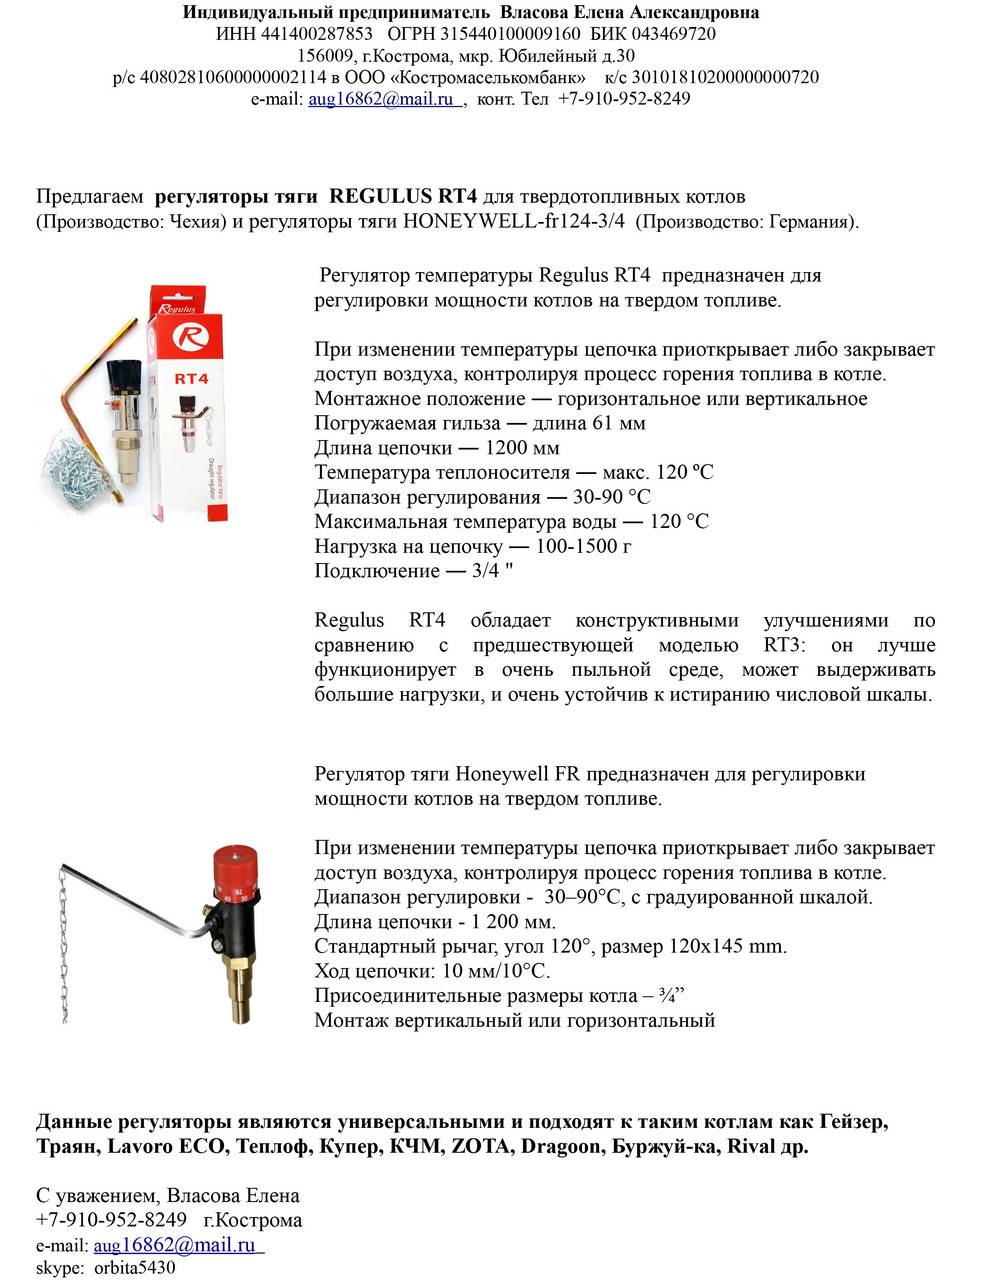 Схемы подключения электрического и твердотопливного котла - tokzamer.ru